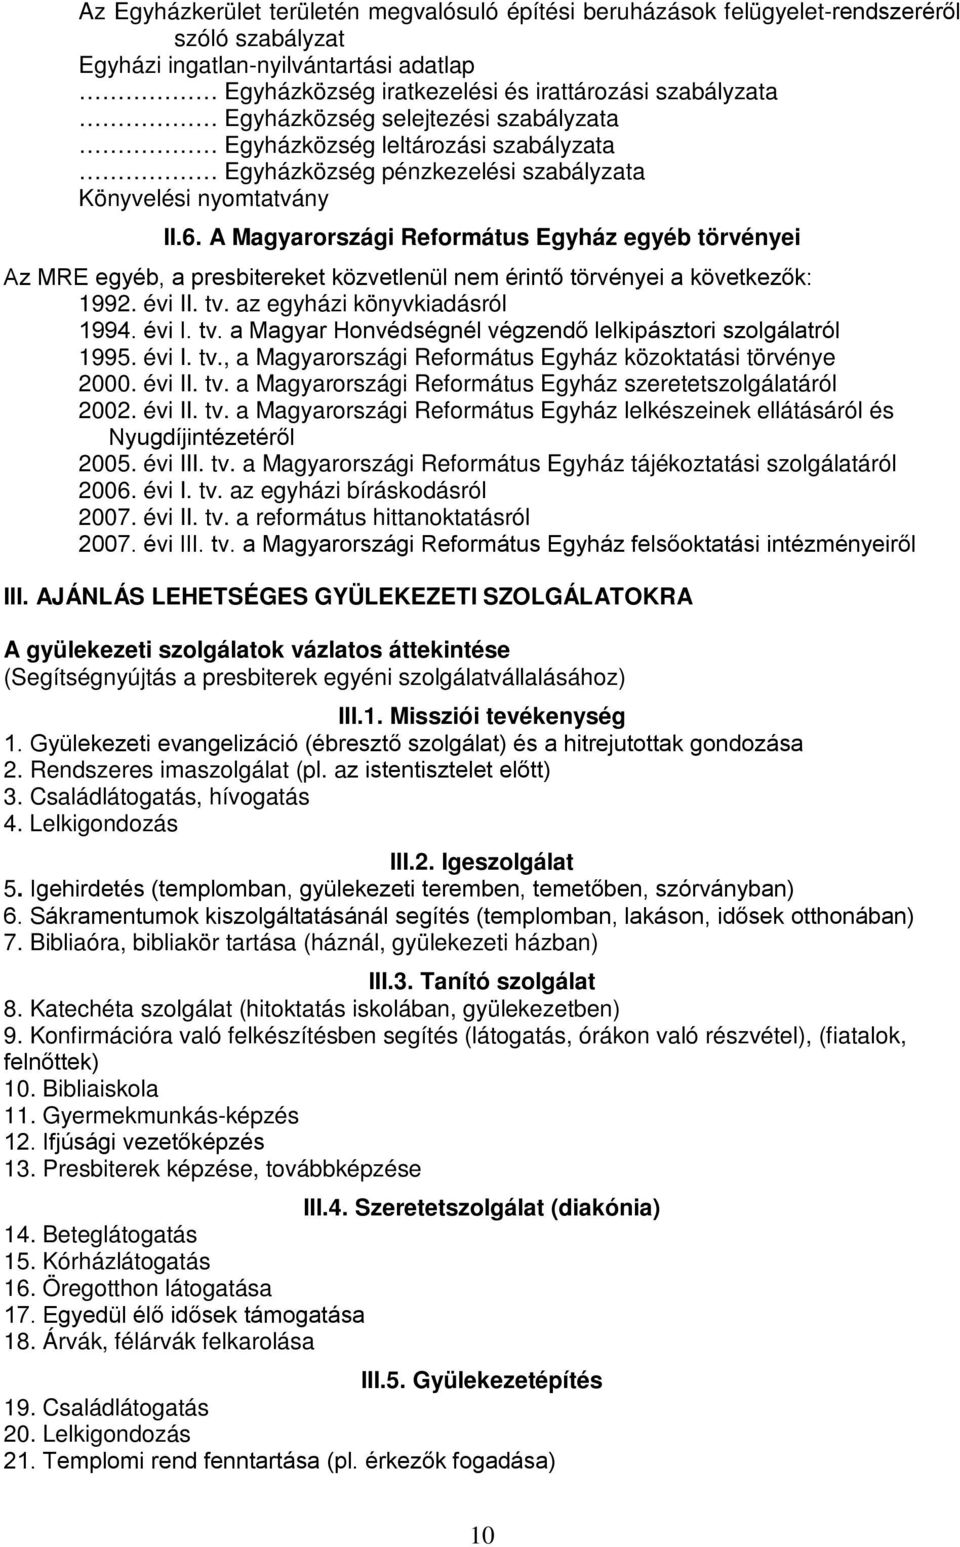 A Magyarországi Református Egyház egyéb törvényei Az MRE egyéb, a presbitereket közvetlenül nem érintő törvényei a következők: 1992. évi II. tv.